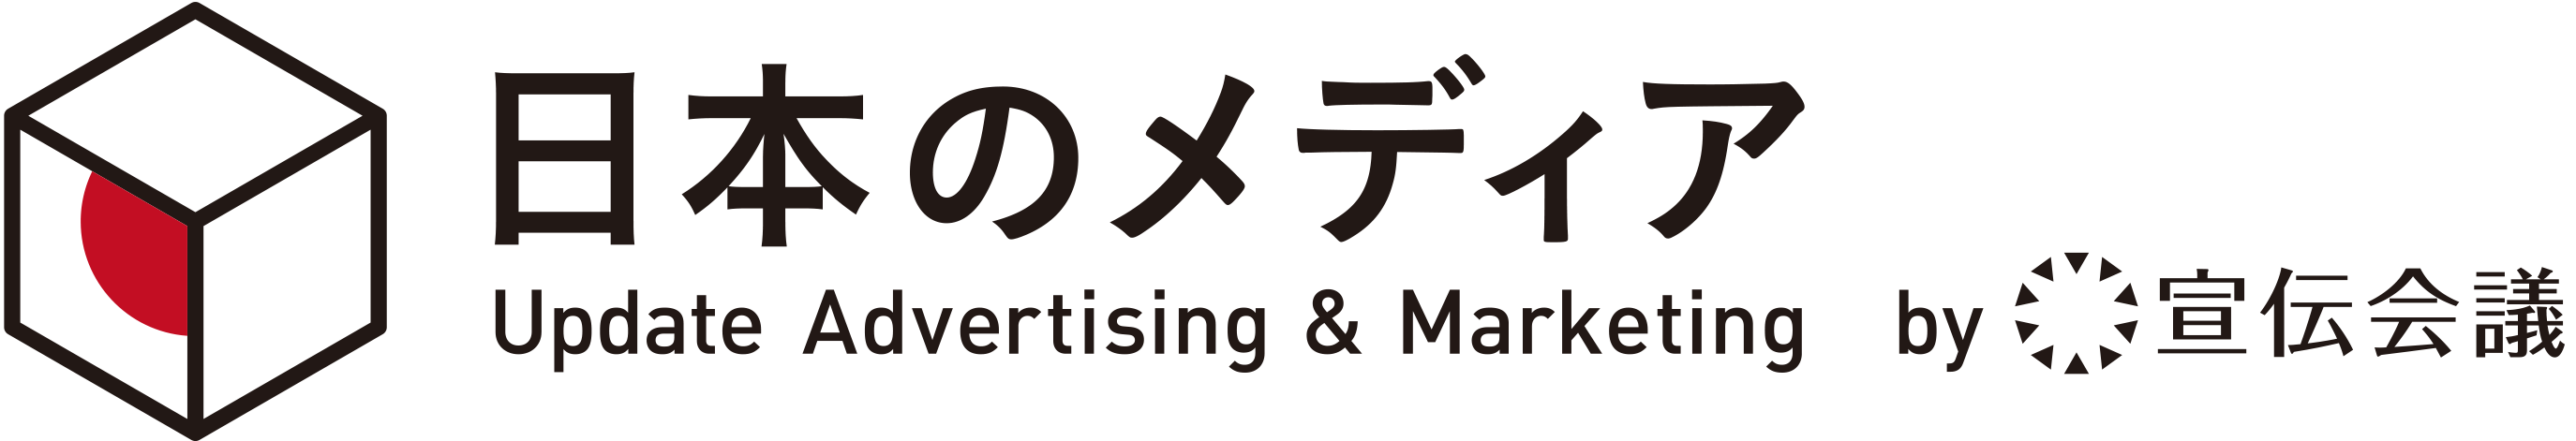 広告メディアを検索できるポータルサイト「日本のメディア」